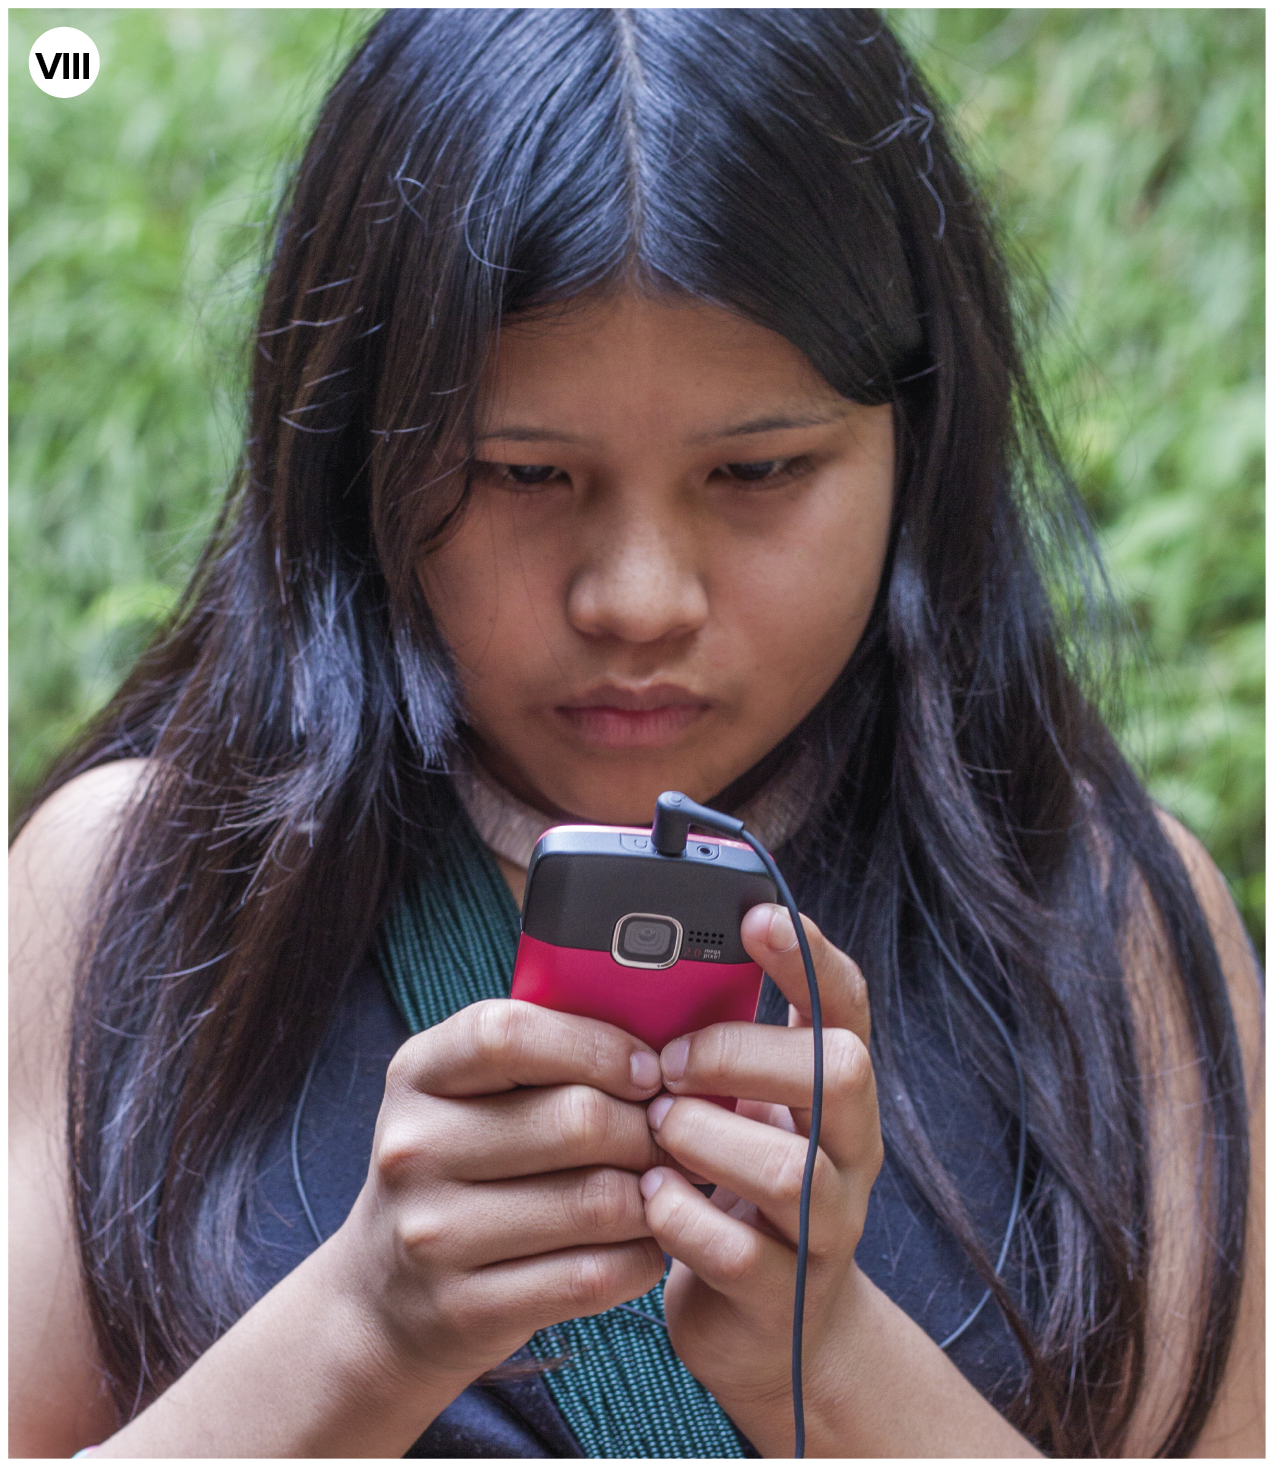 Fotografia. Número oito.  Uma menina indígena vista dos ombros para cima. Ela tem cabelos pretos longos e divididos ao meio. Ela segura nas mãos um celular em preto e rosa-escuro, e fones de ouvido. Ao fundo, vegetação com folhas em verde."